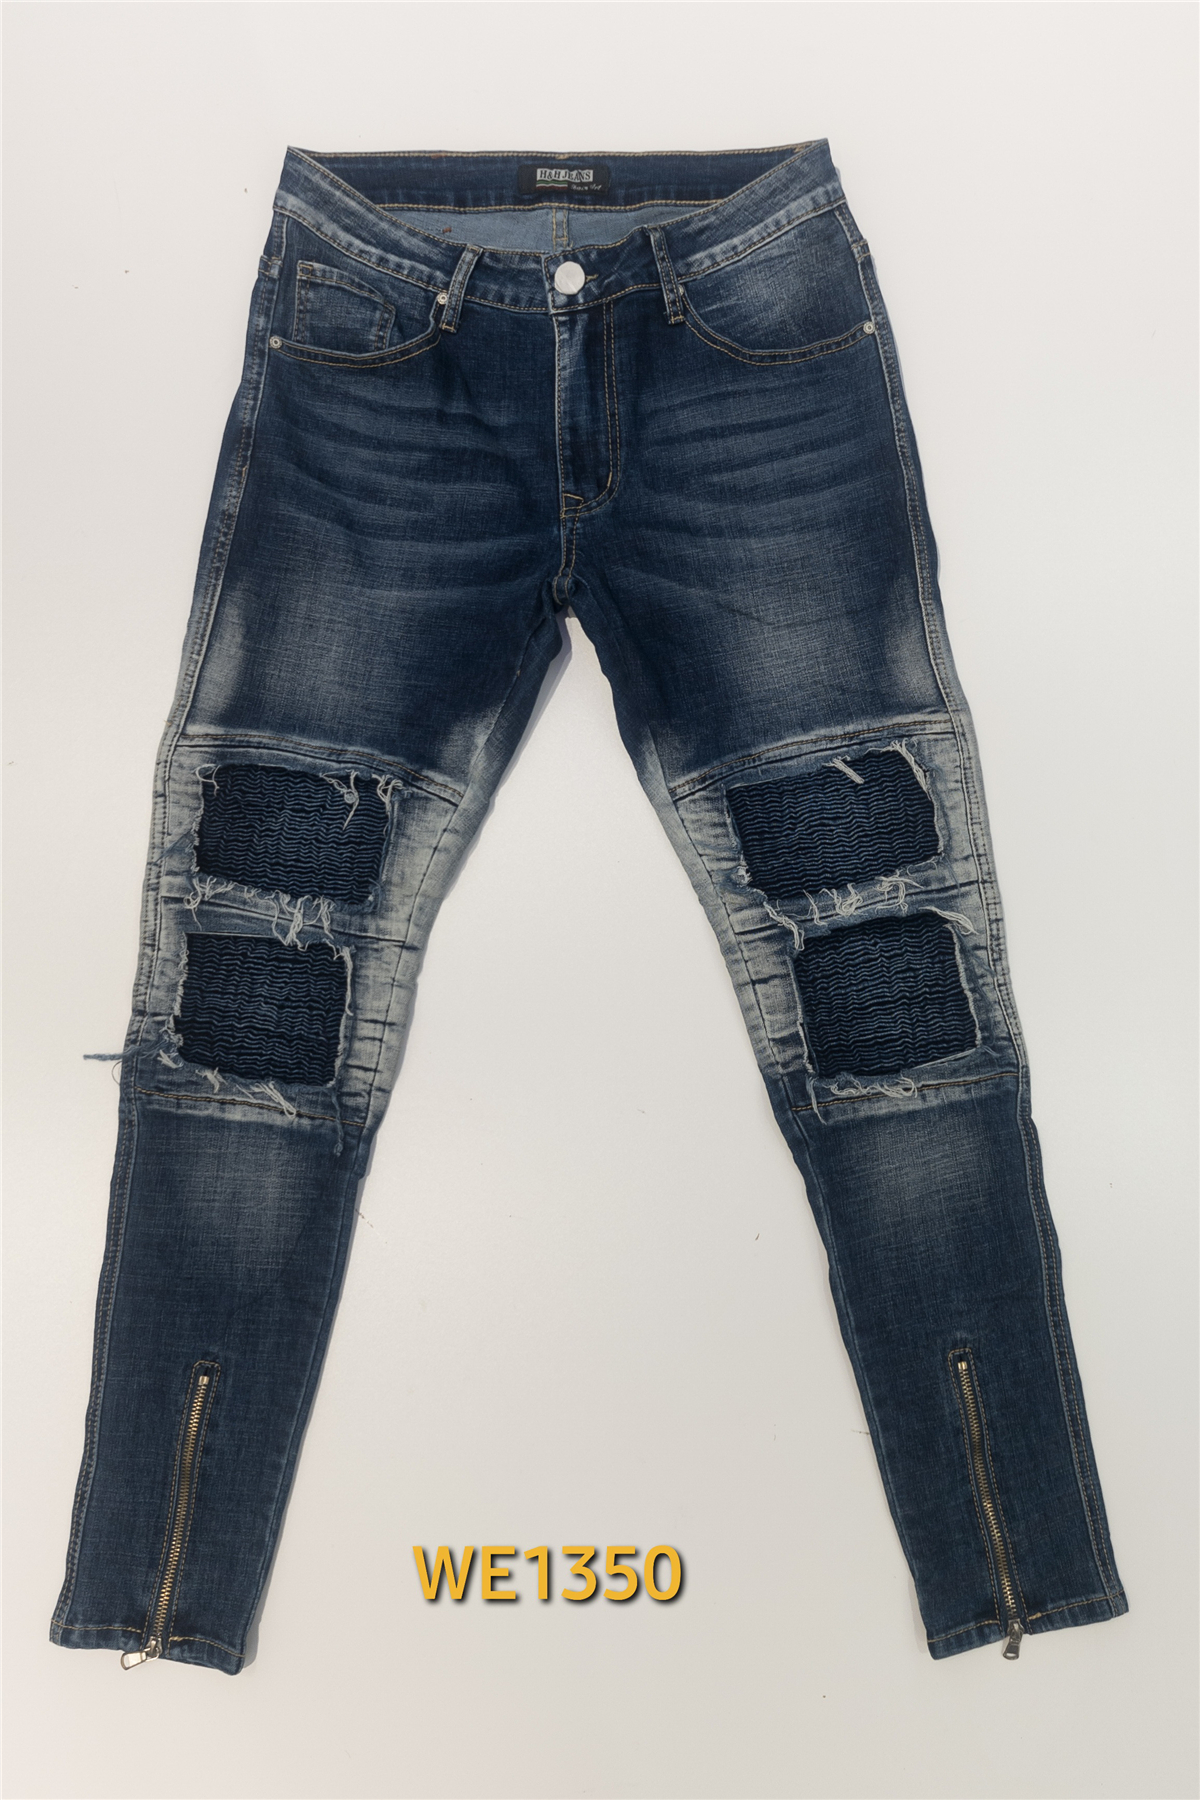 Jeans Men Jean ROY LYS WE1350 #c Efashion Paris